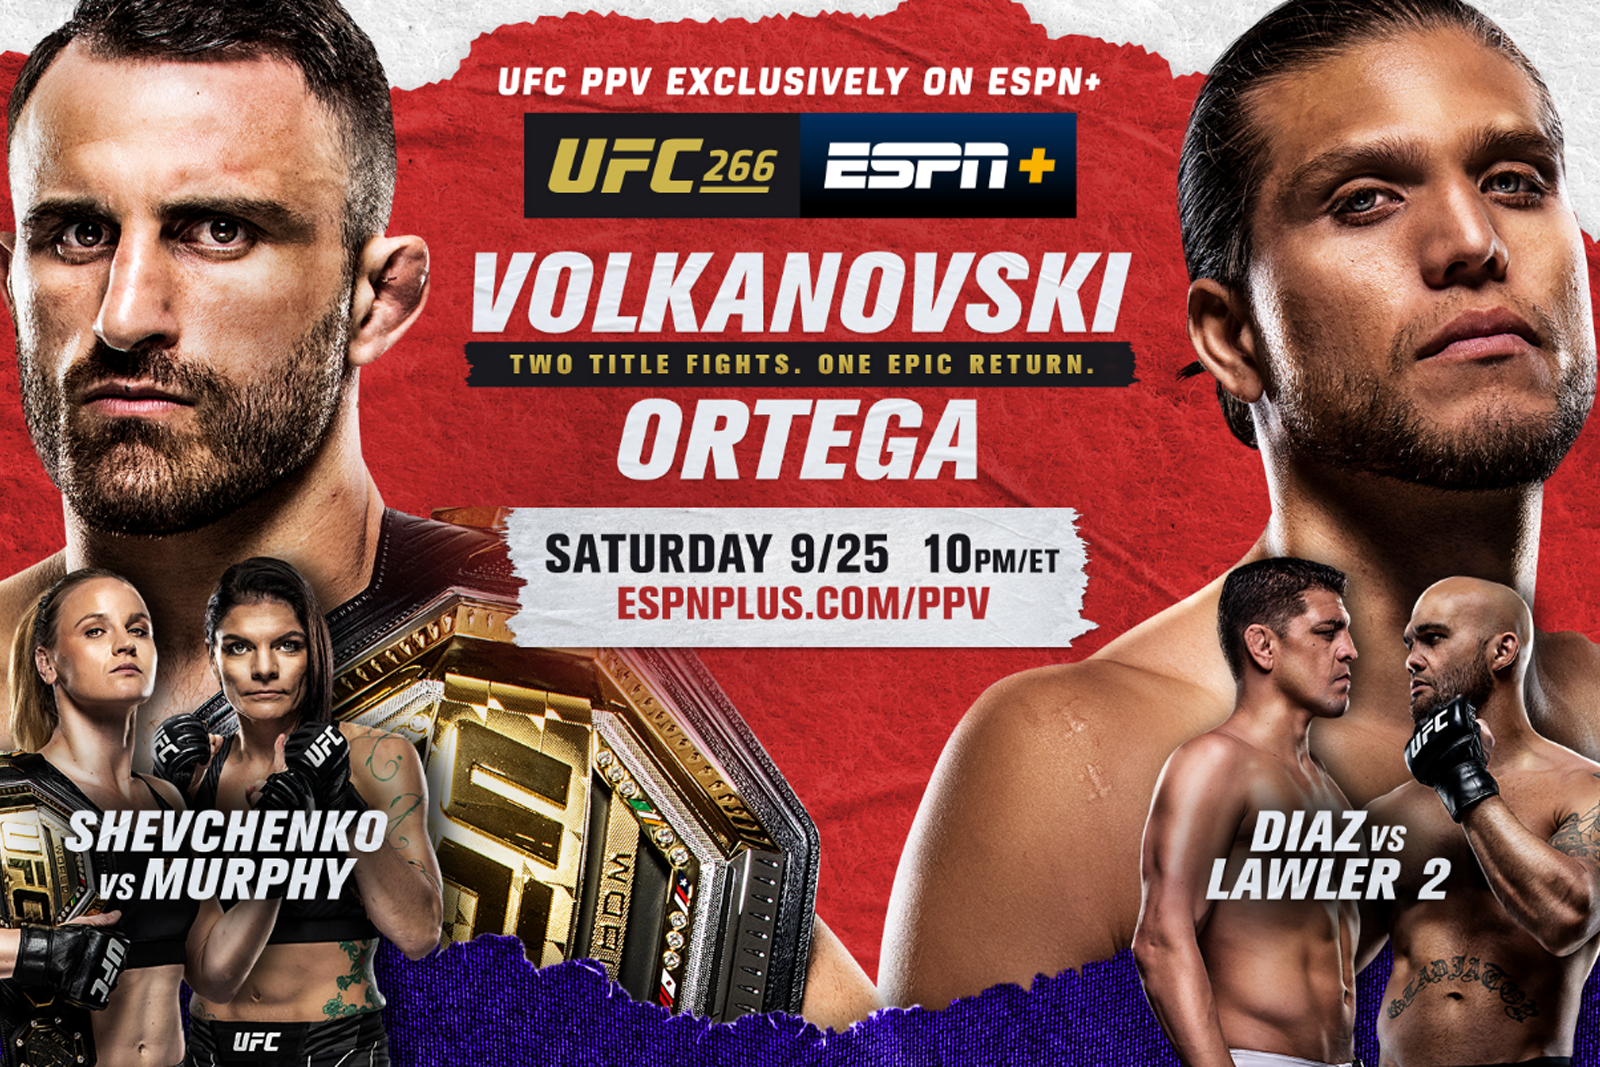 Stream UFC 266 on ESPN to watch “T-City” Brian Ortega against the UFC Featherweight champion, Volkanovski photo 1